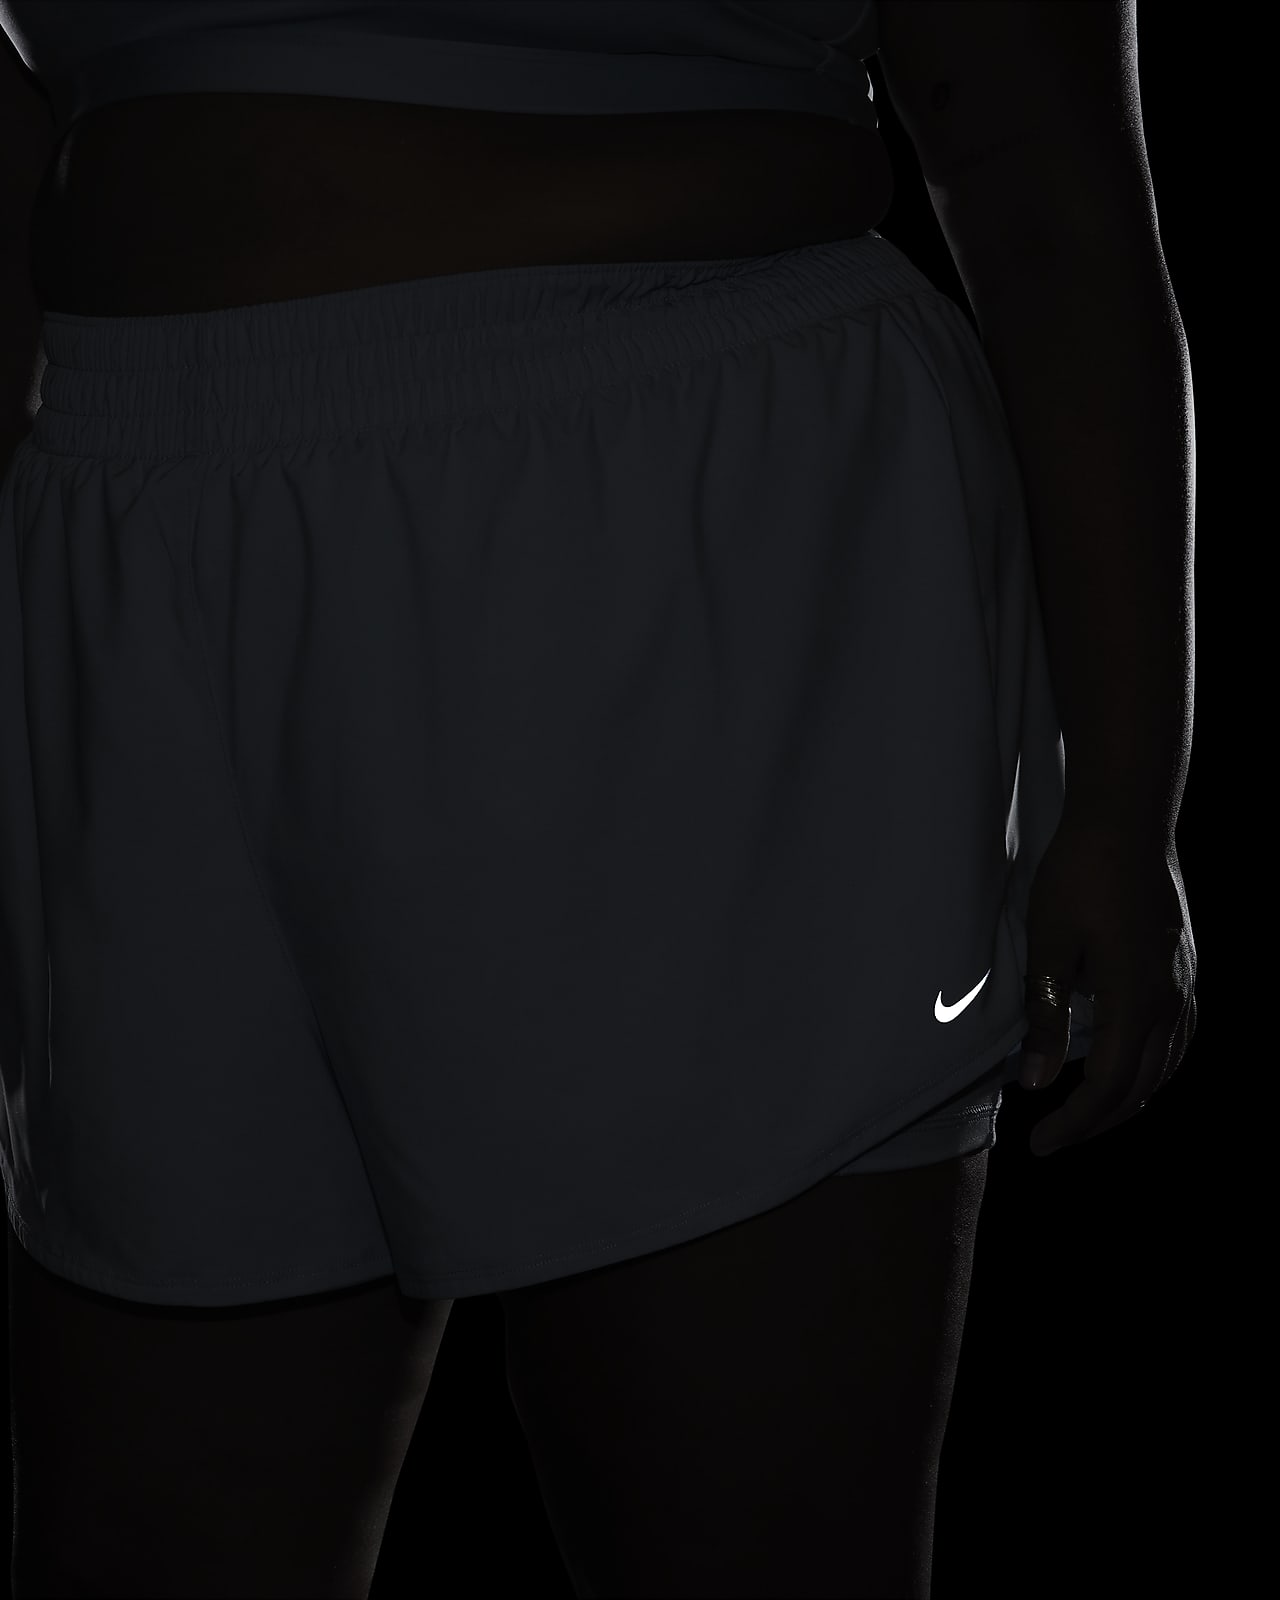 Nike Pro 365 Women's 5 Shorts (Plus Size). Nike.com